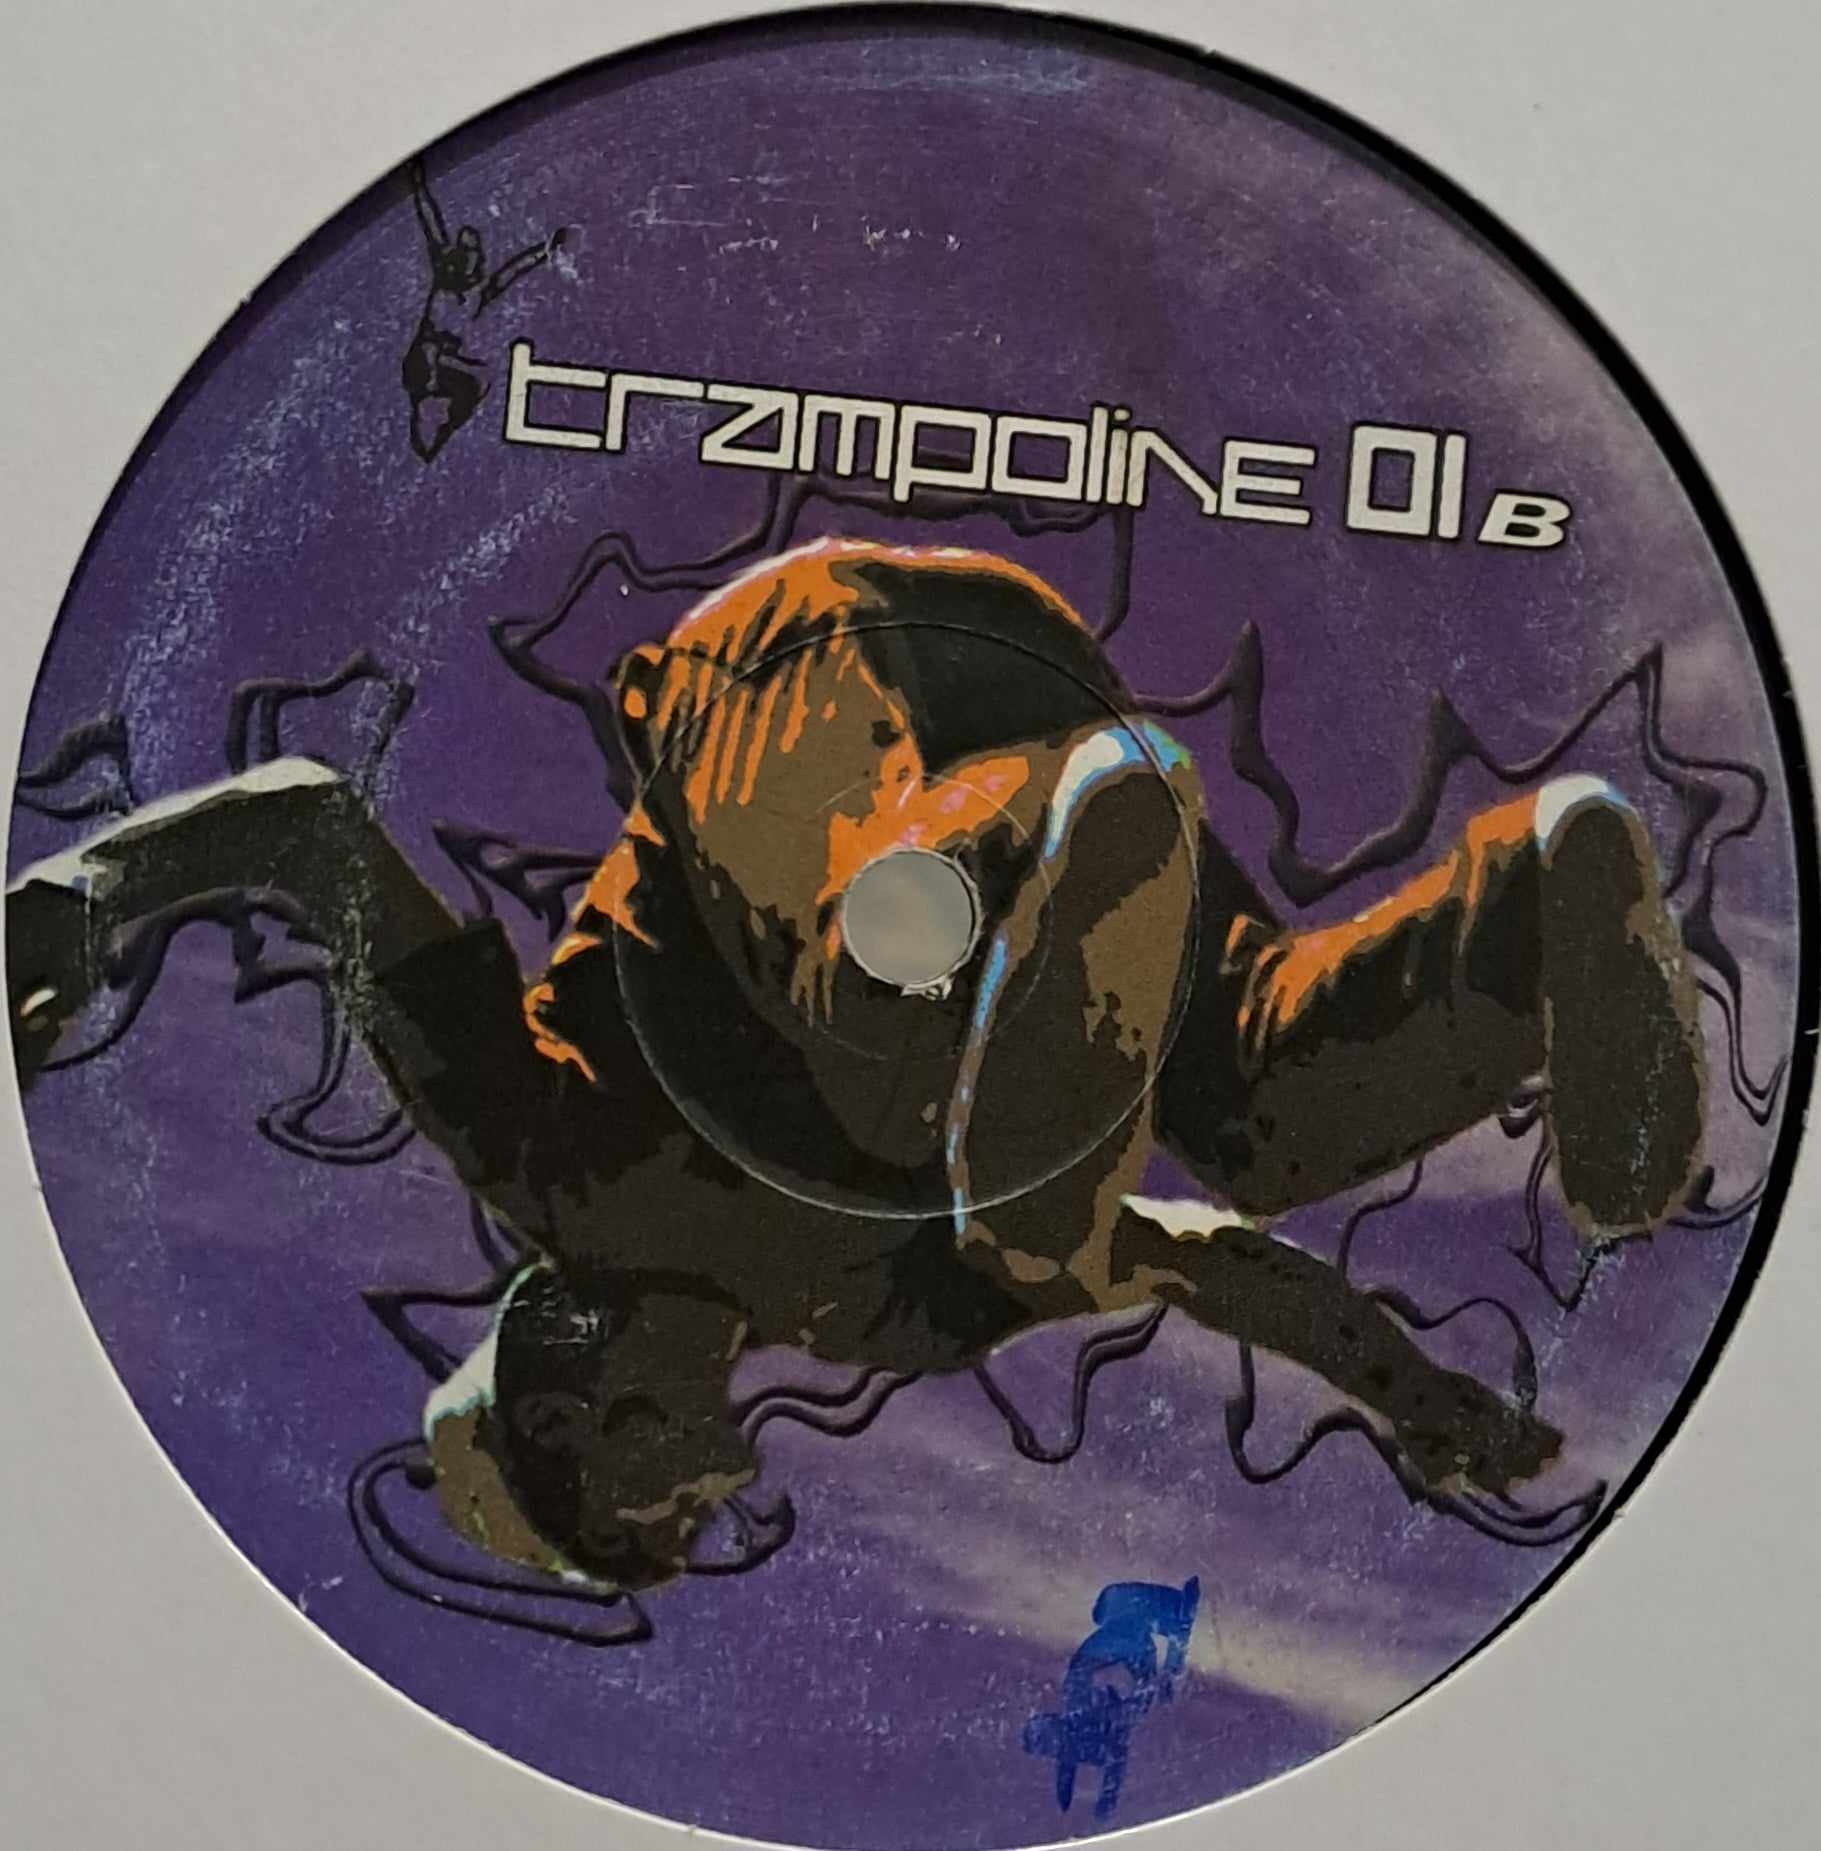 Trampoline 01 - vinyle freetekno